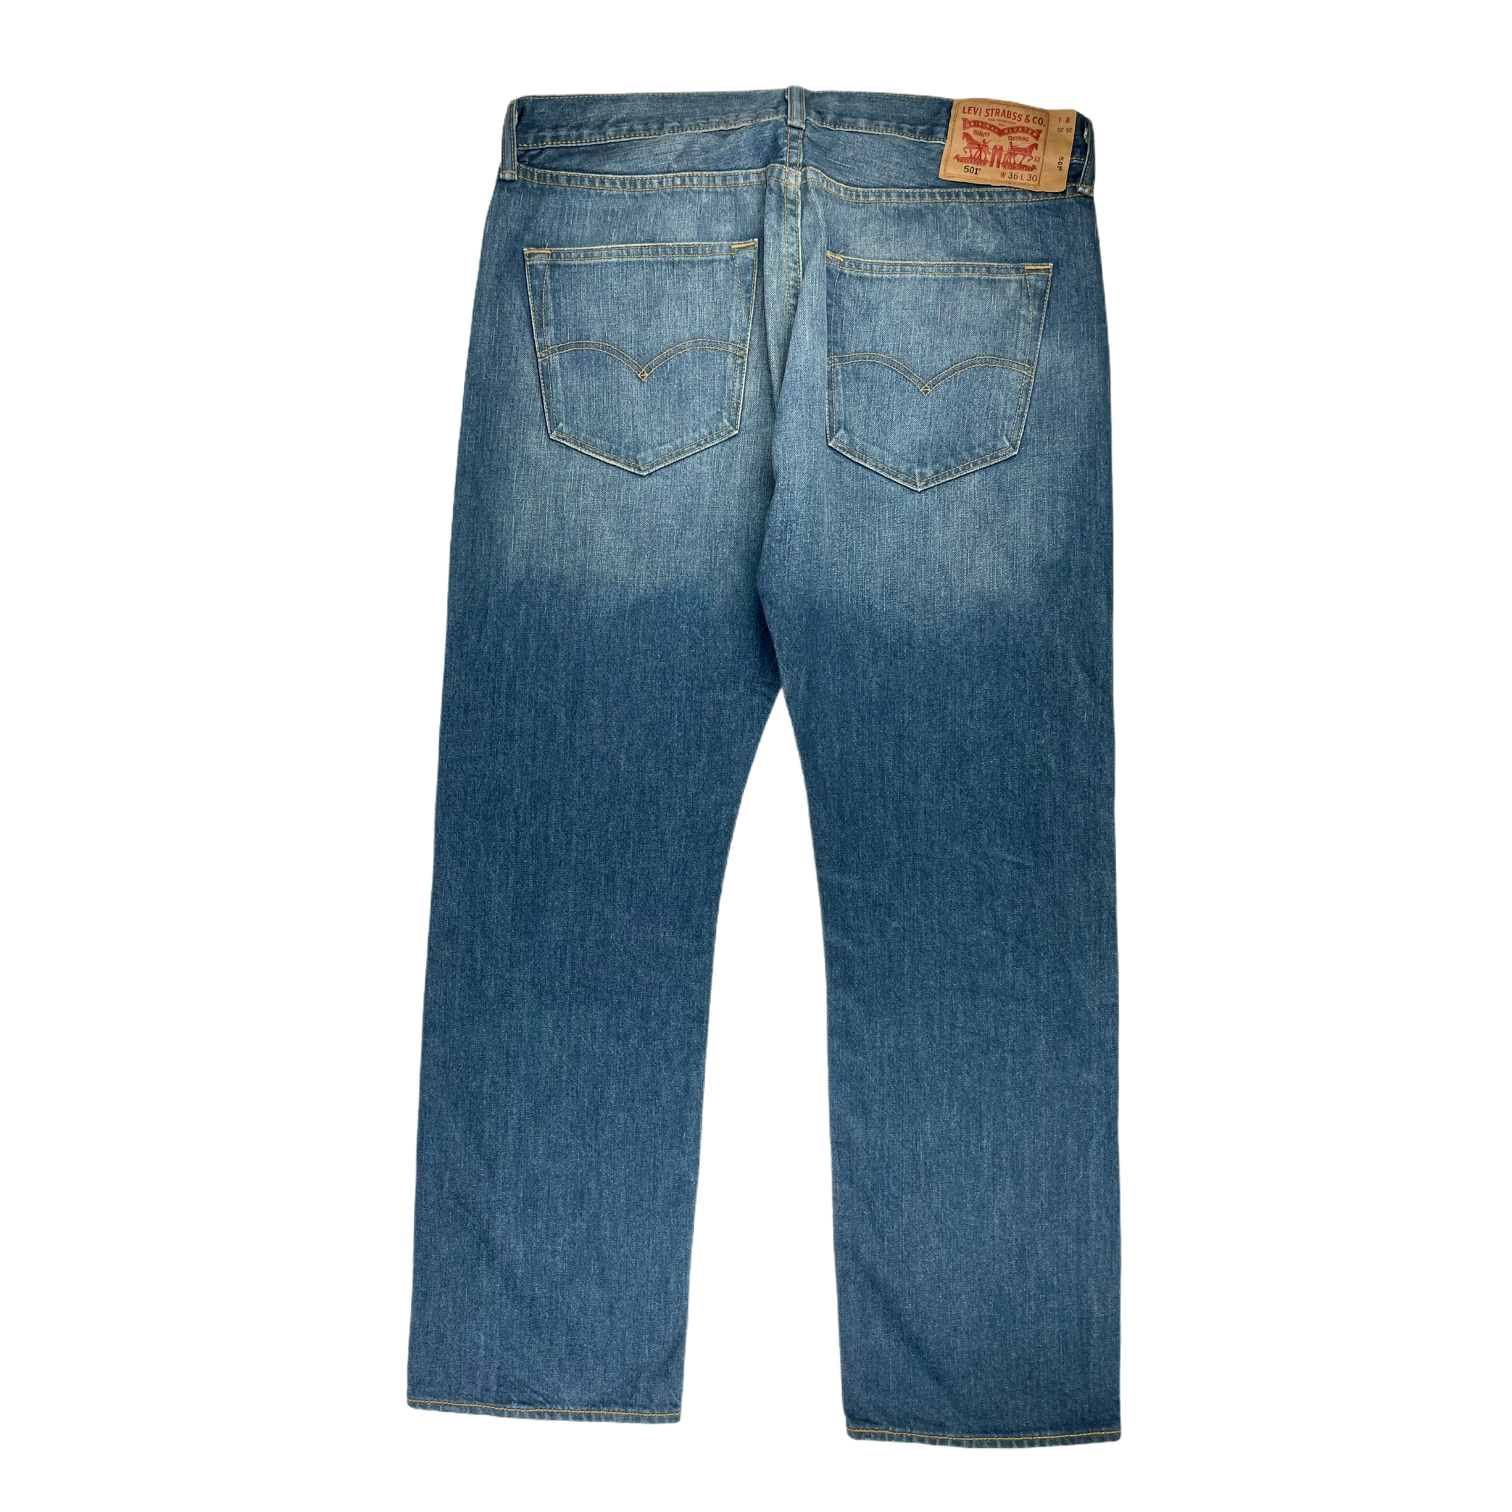 Vintage Levi's jeans 501 - 36/30 - Restorecph